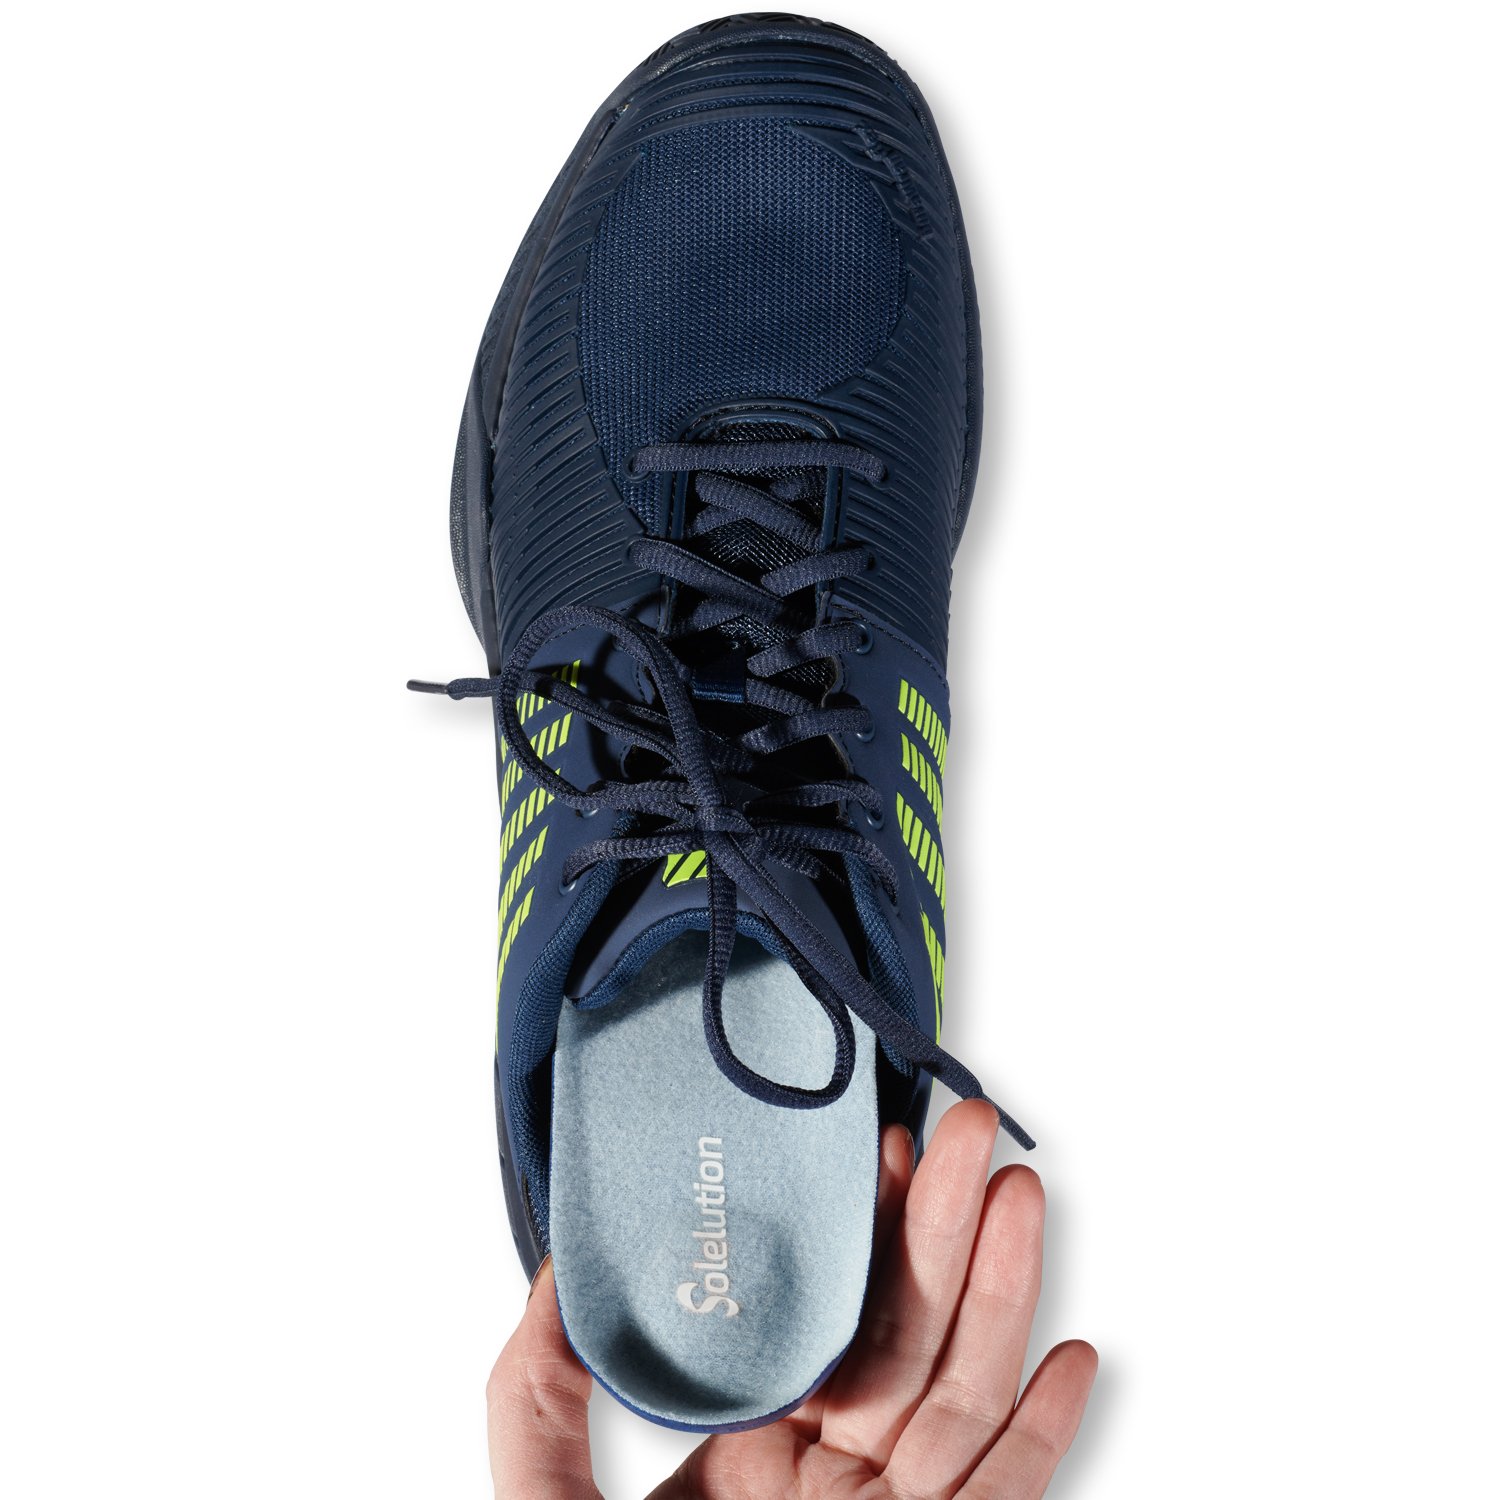 solelution high heel comfort insoles shoe